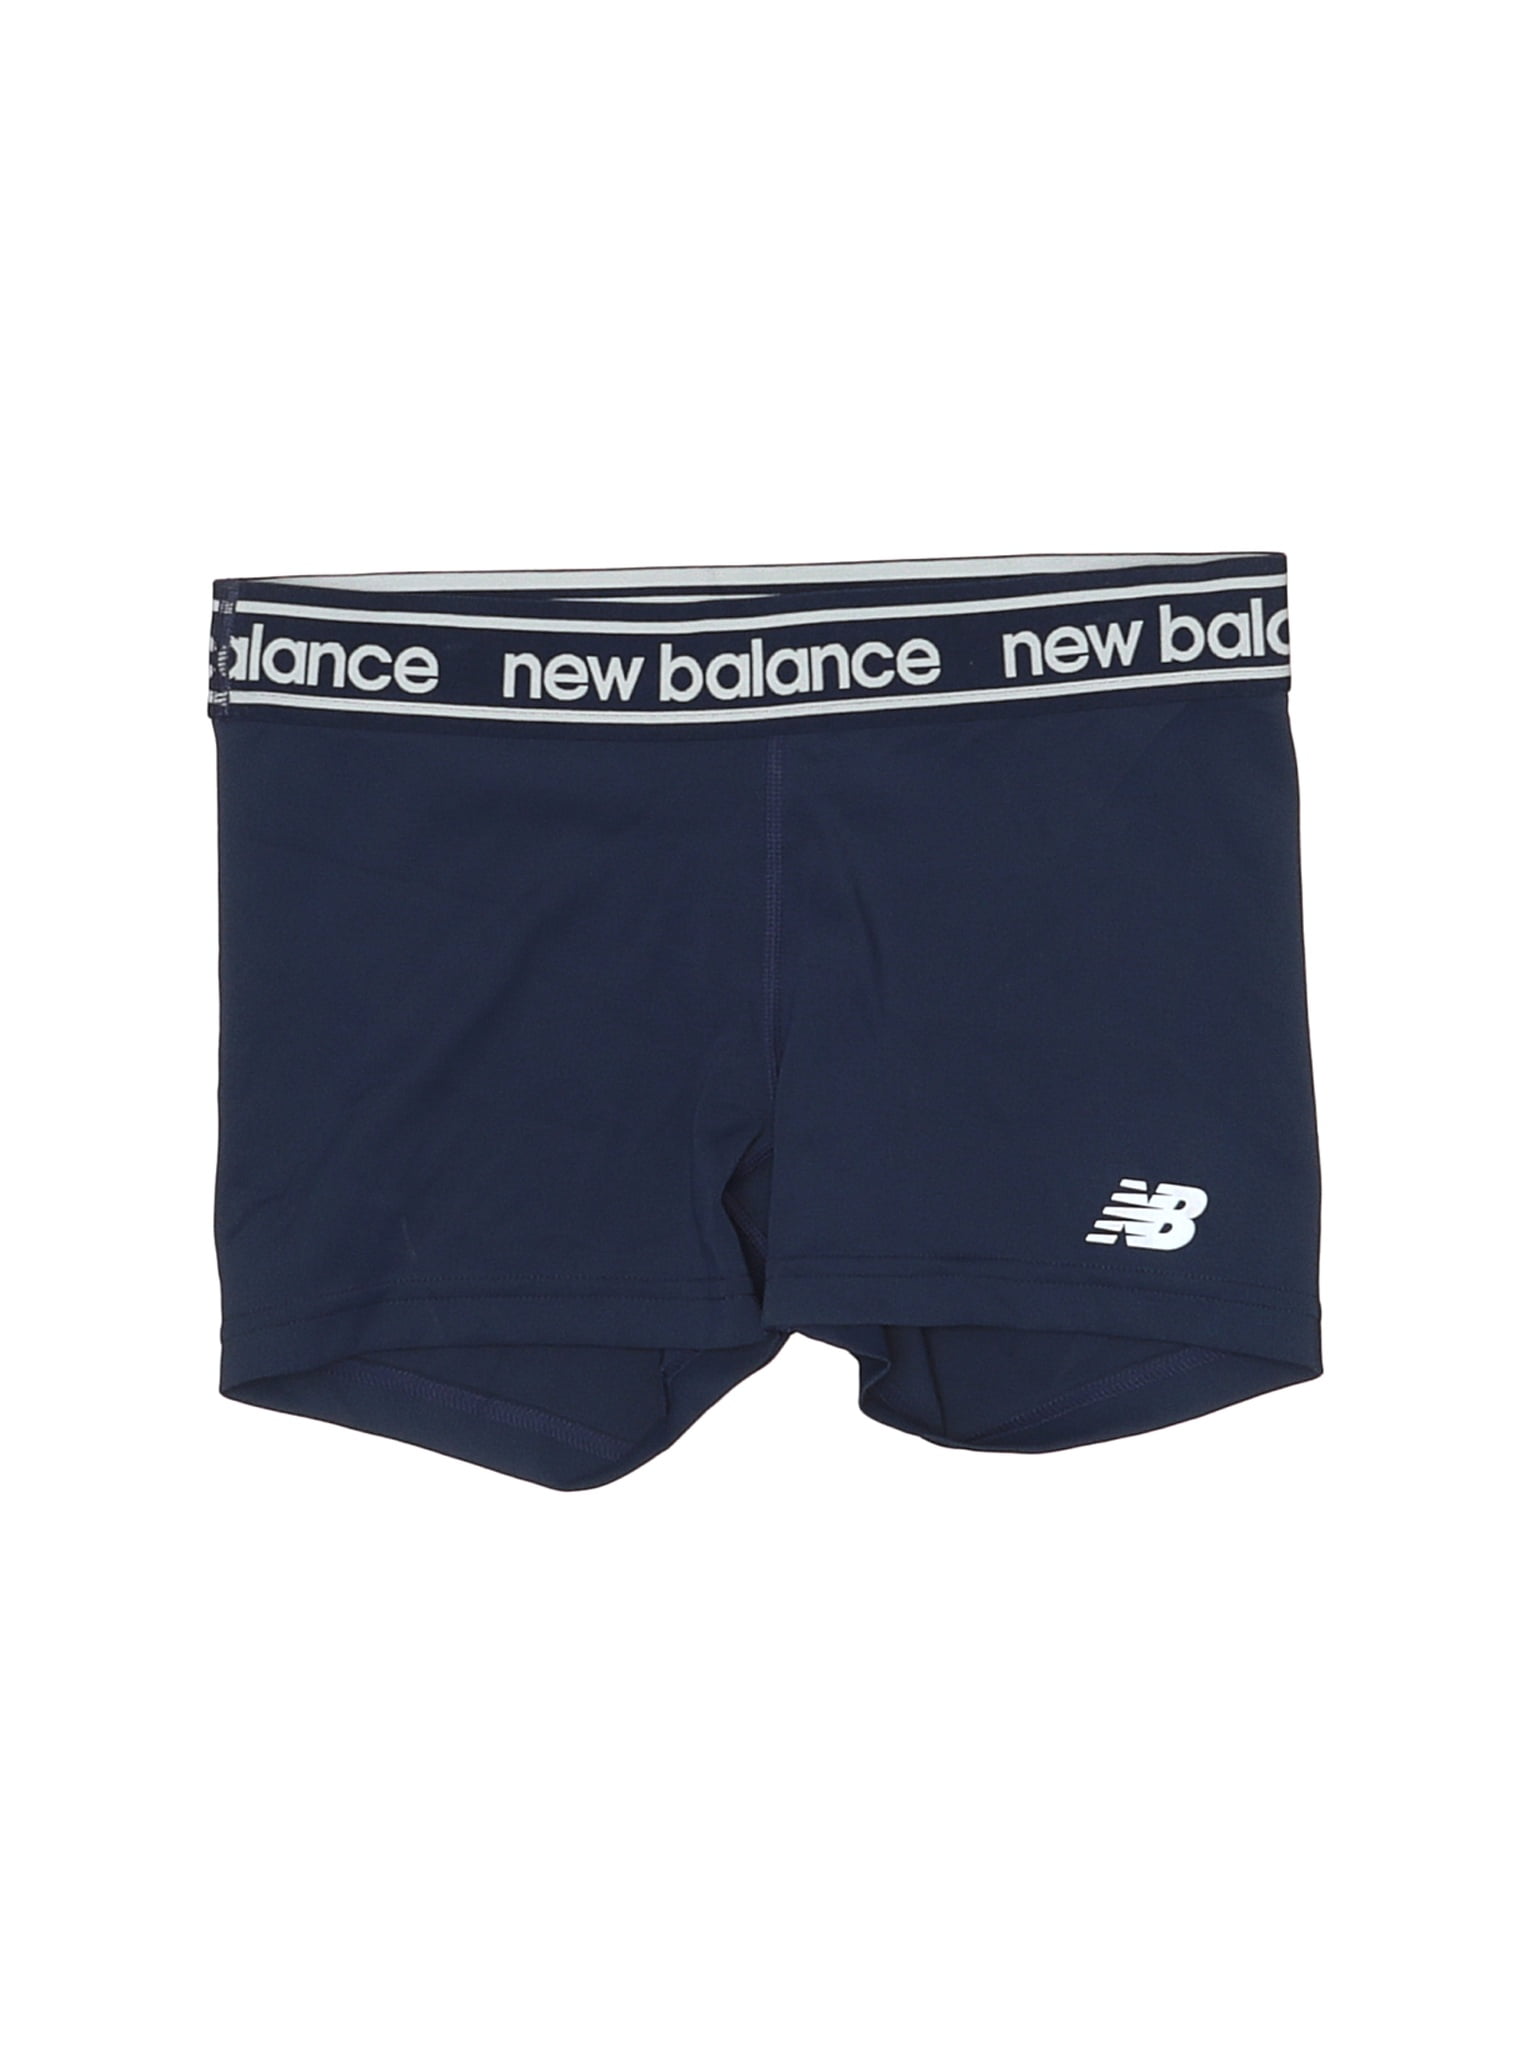 new balance athletic shorts